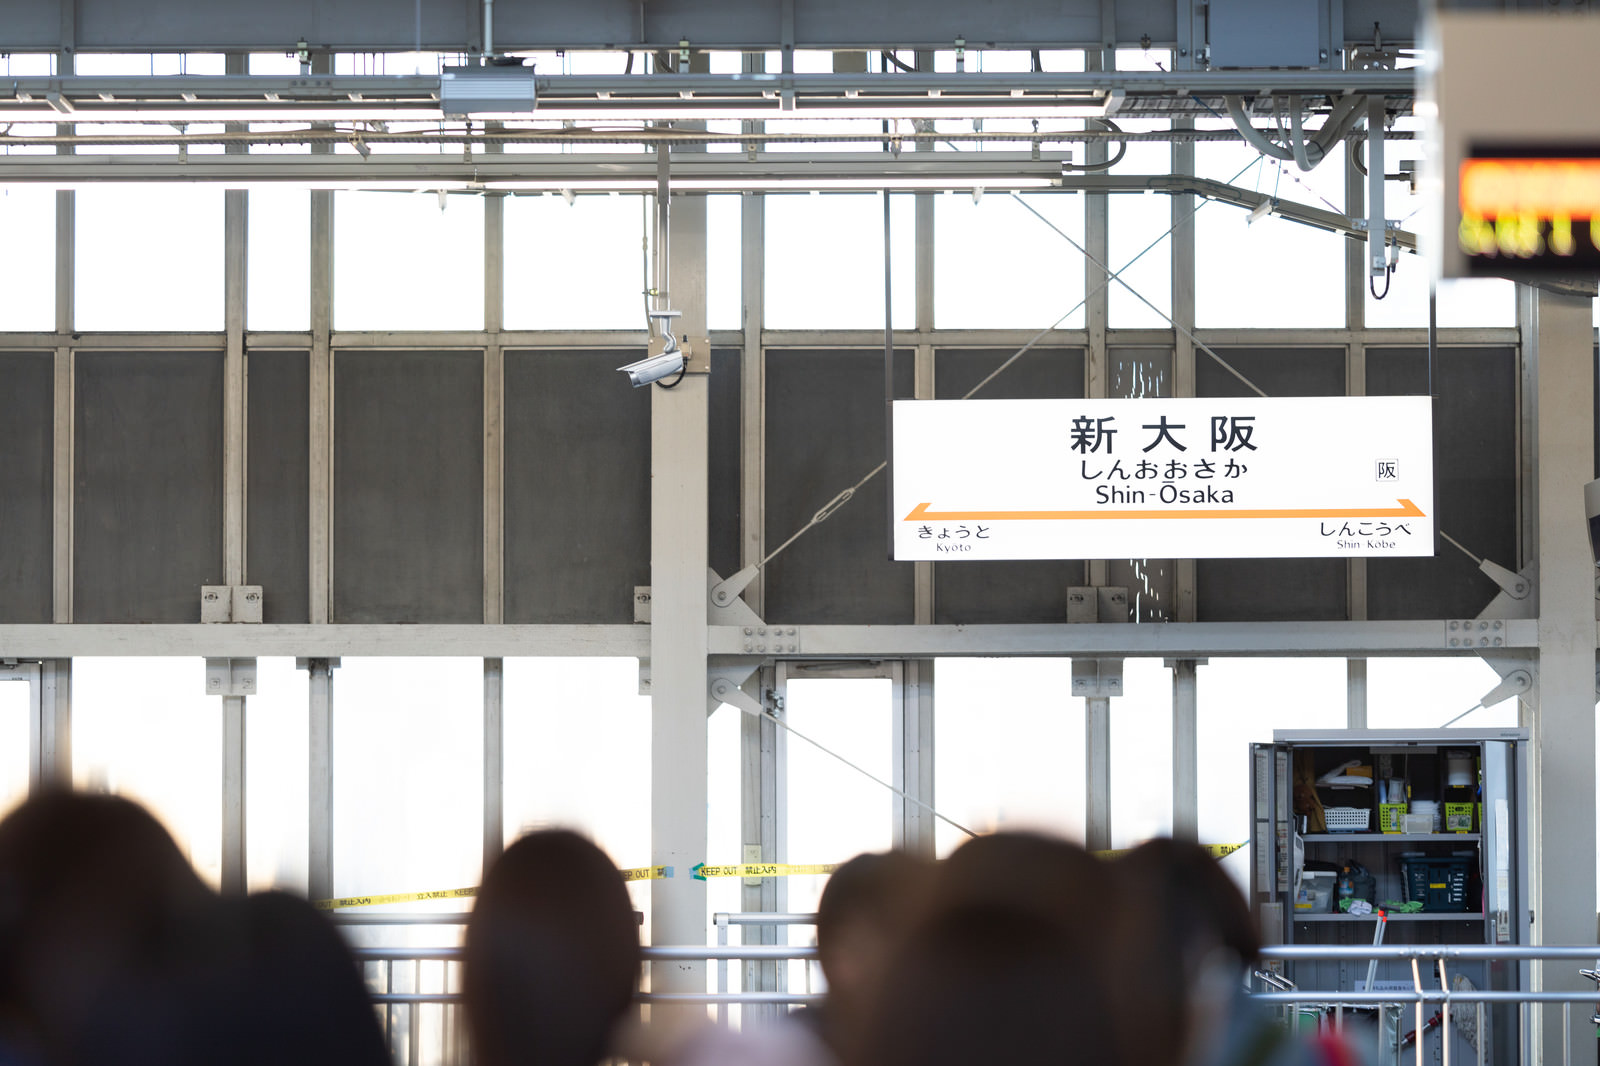 新大阪の駅名標の写真 画像 フリー素材 ぱくたそ